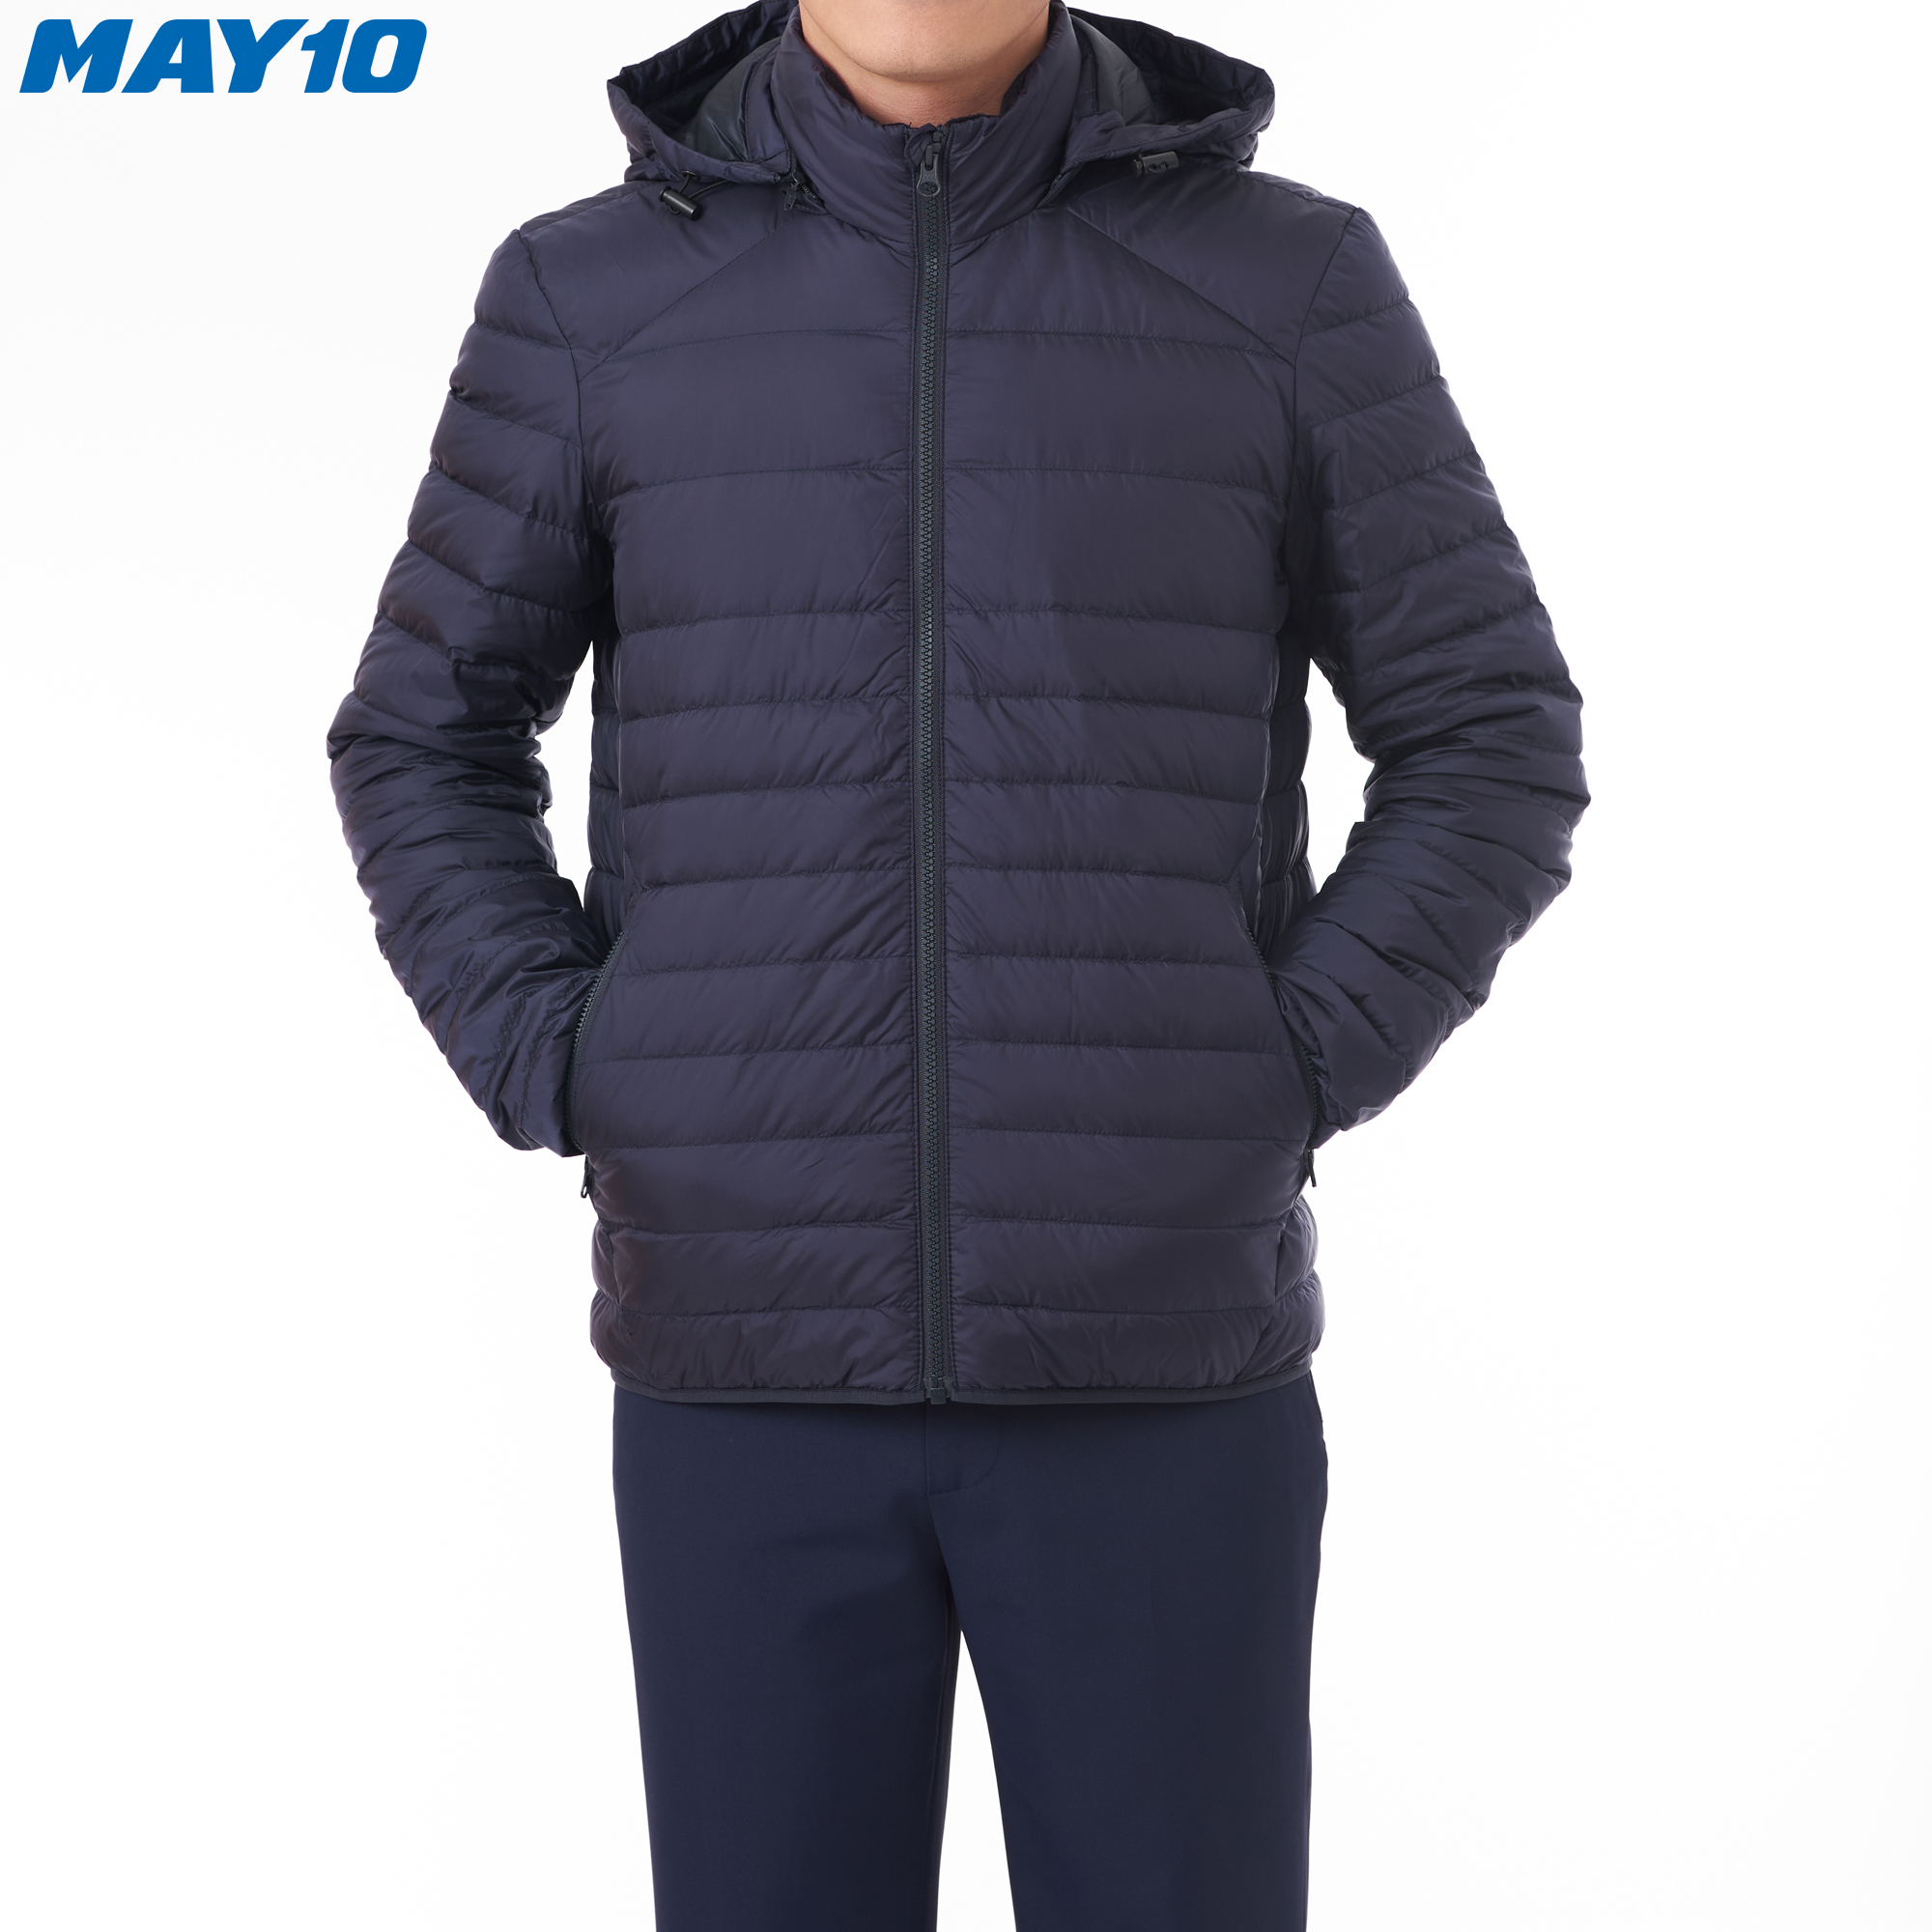 Áo khoác Jacket lông vũ nam (có mũ) May 10 mã 030121402LG màu NAVY